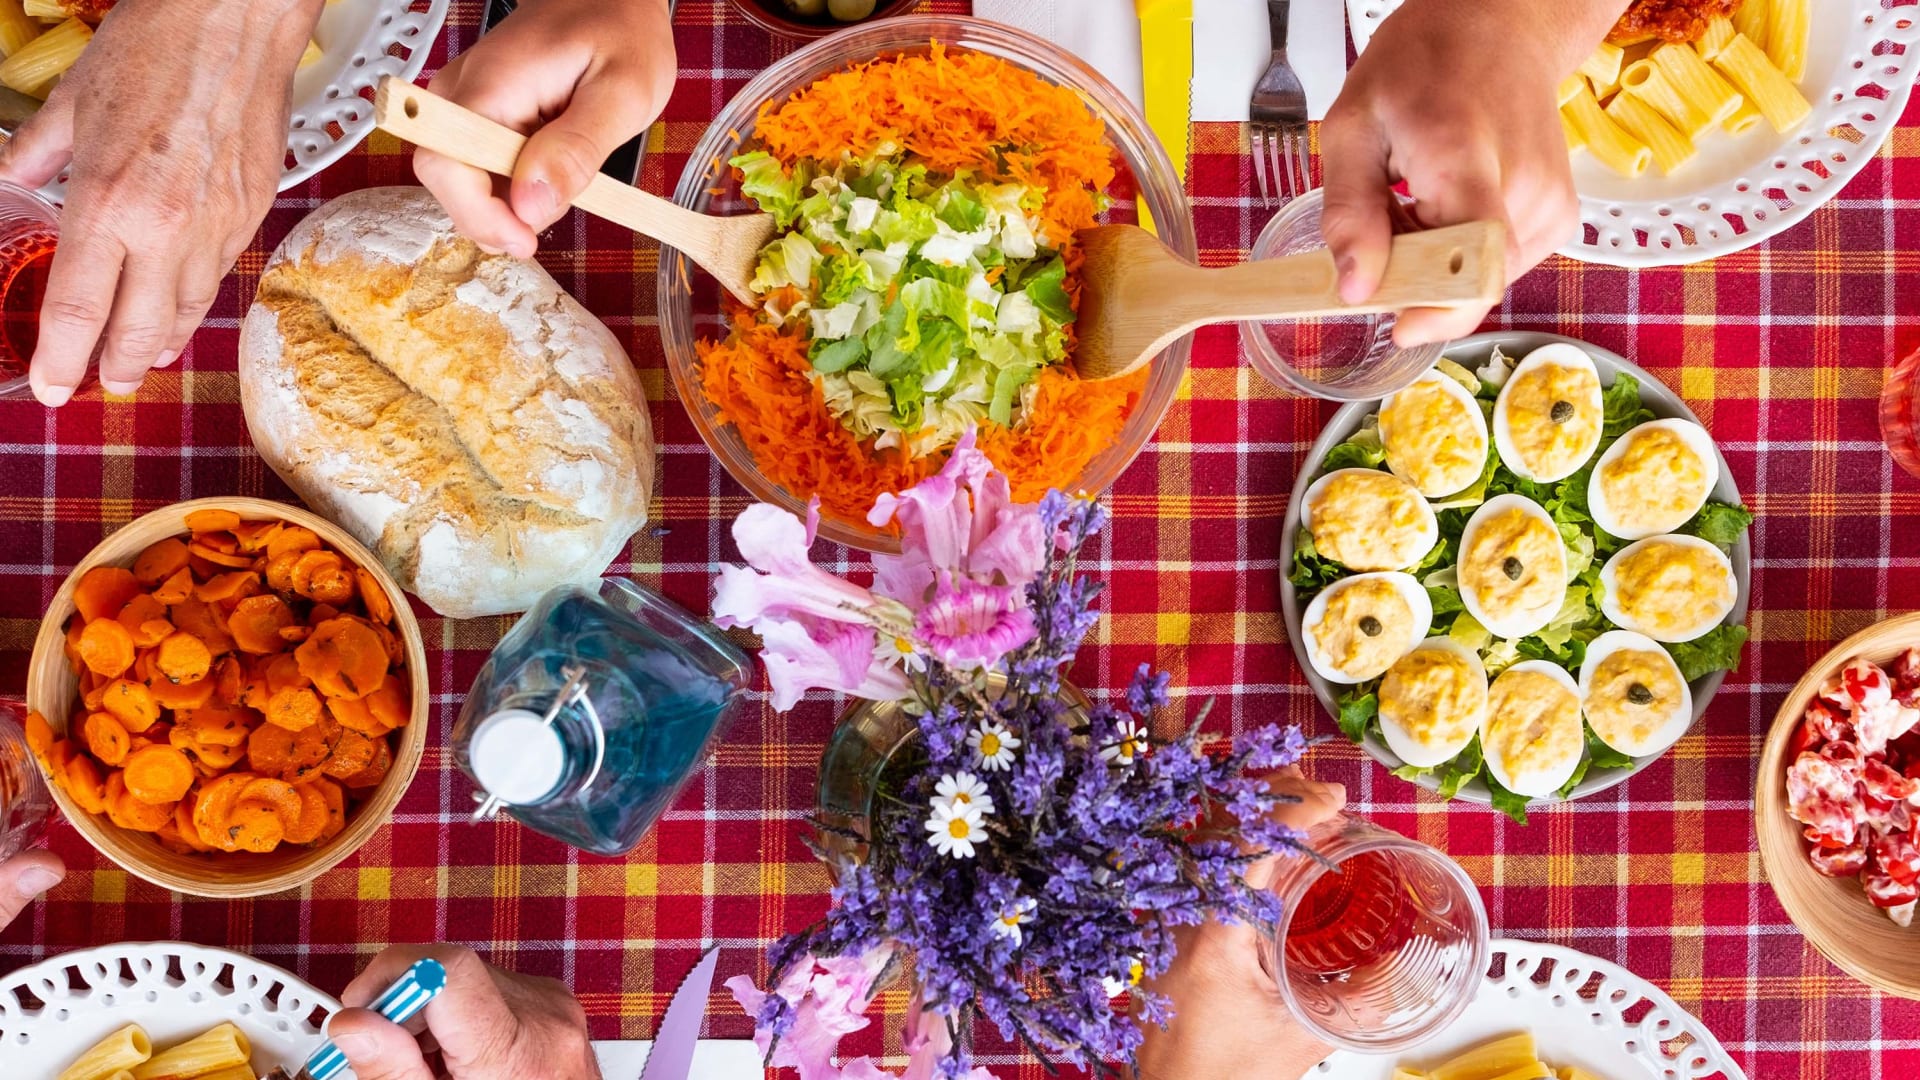 دراسة تكشف أن تناول الطعام خارج المنزل قد يؤثر سلبًا على هرموناتك